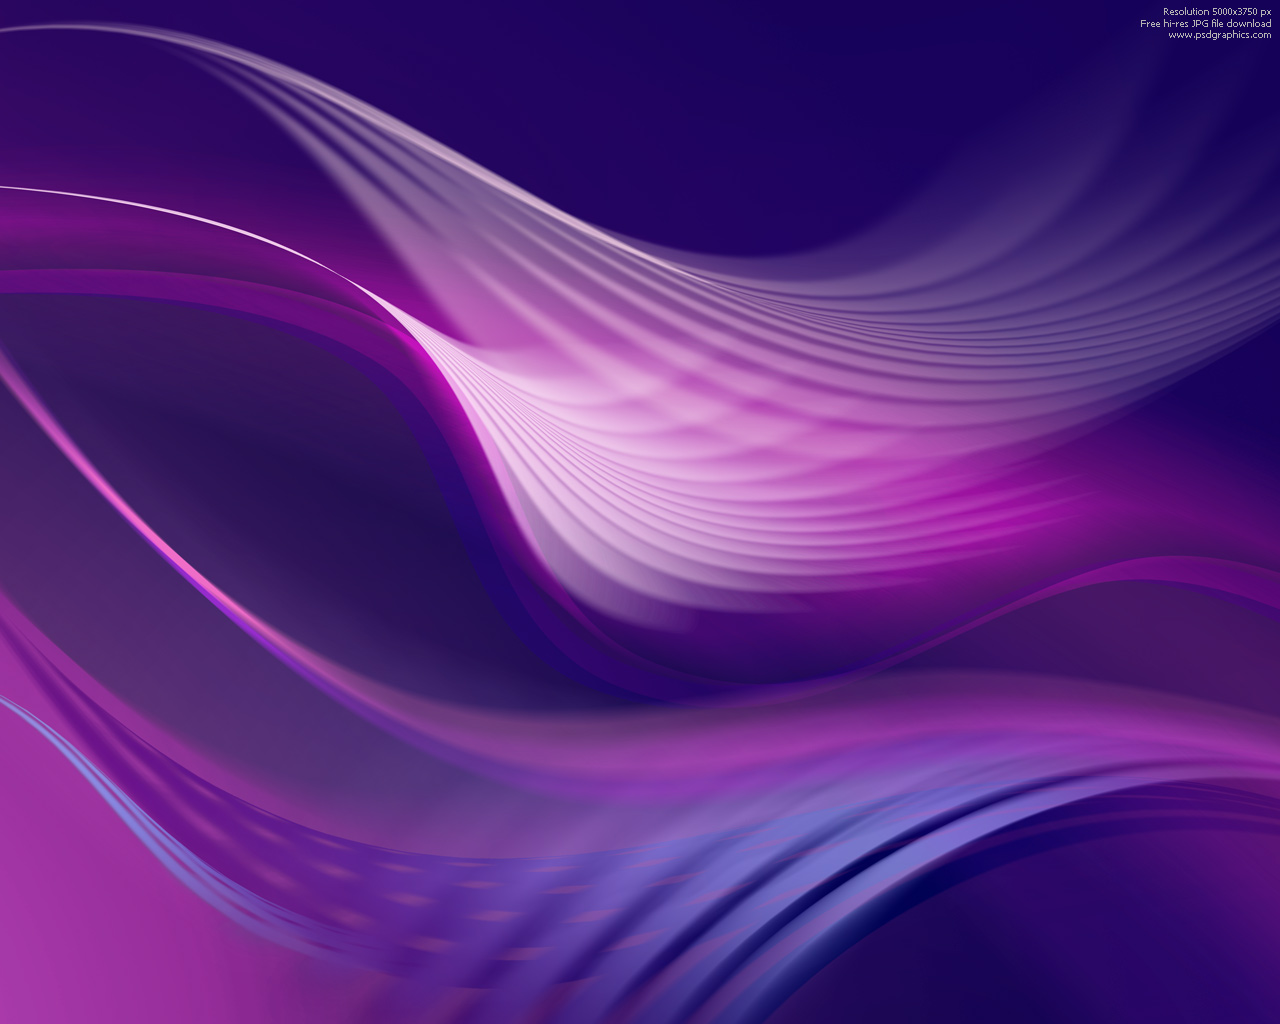 紫色の壁紙デザイン,紫の,青い,バイオレット,ライラック,波